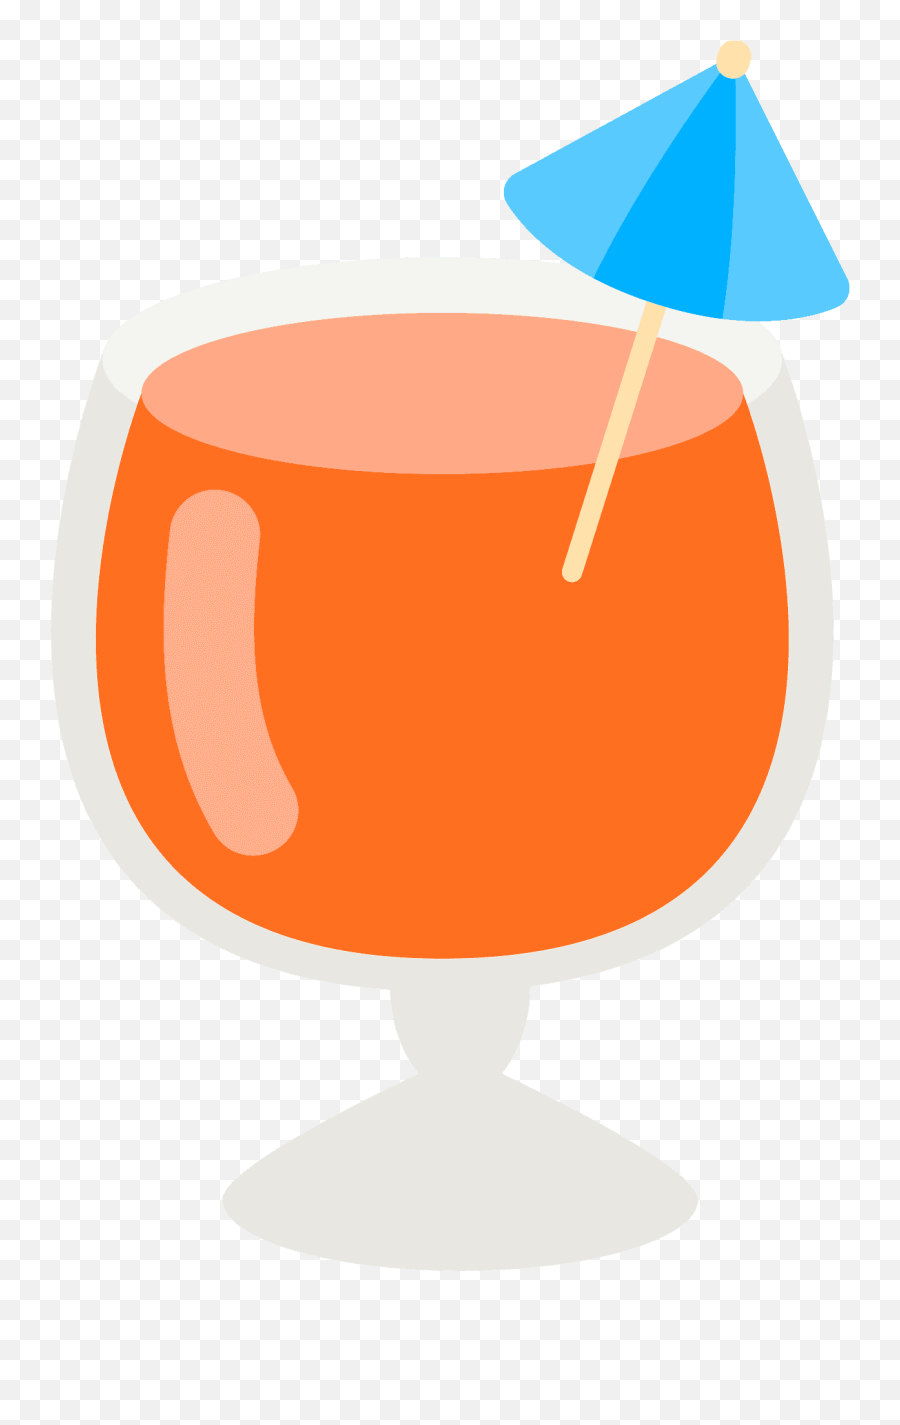 Tropical Drink Emoji Clipart Free Download Transparent Png,Spilled Drink Emoji